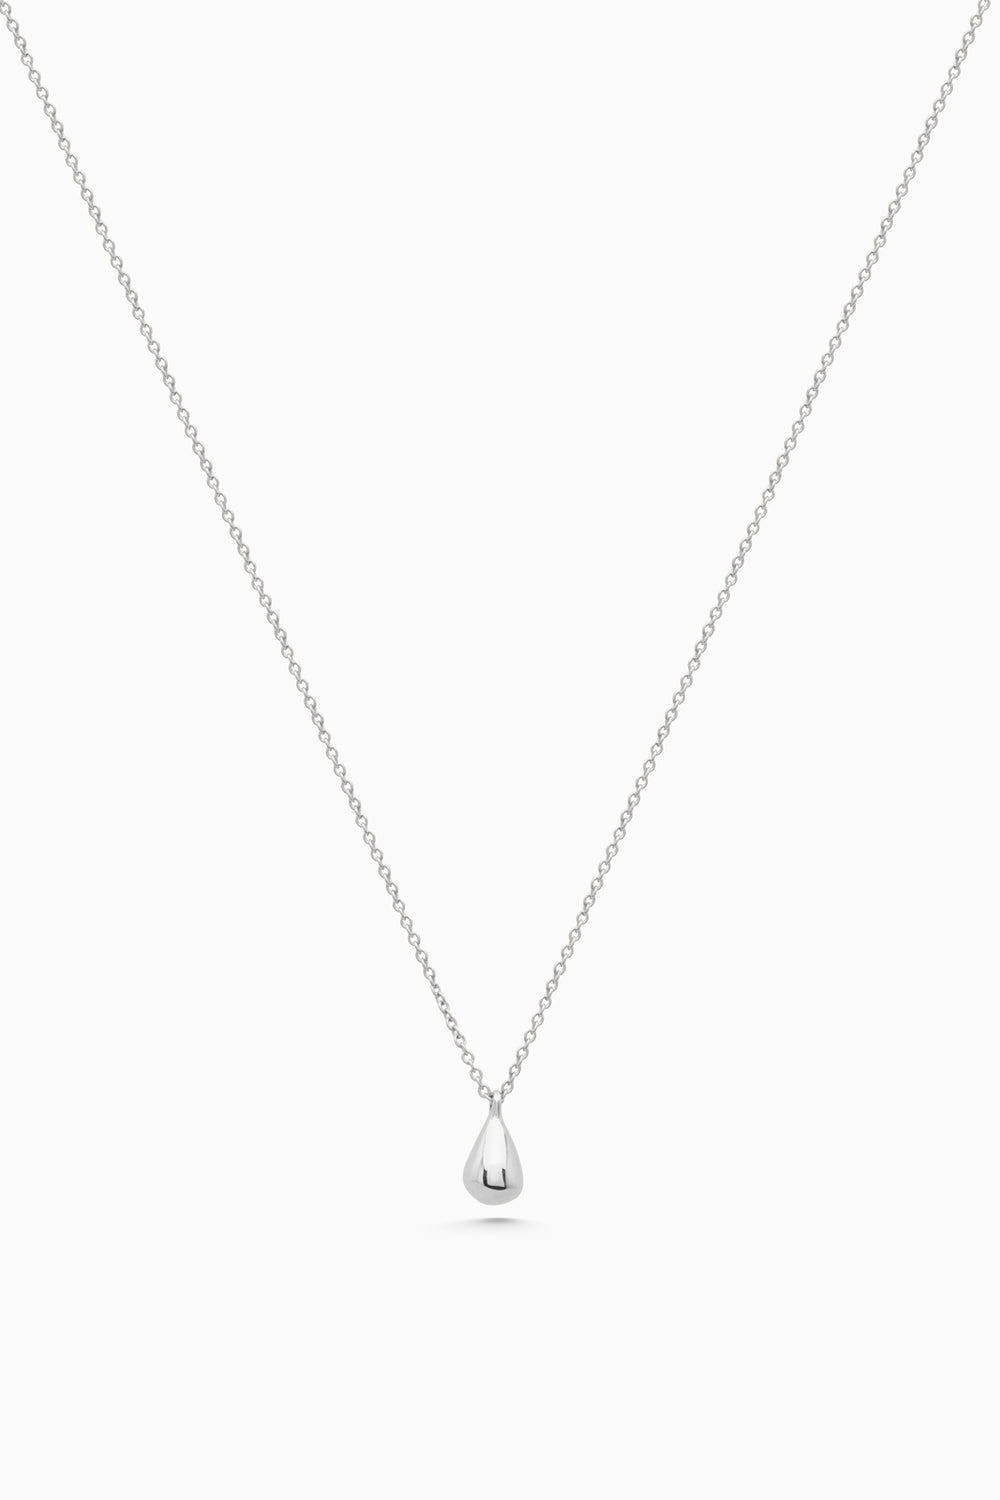 Tear Drop Necklace | Silver